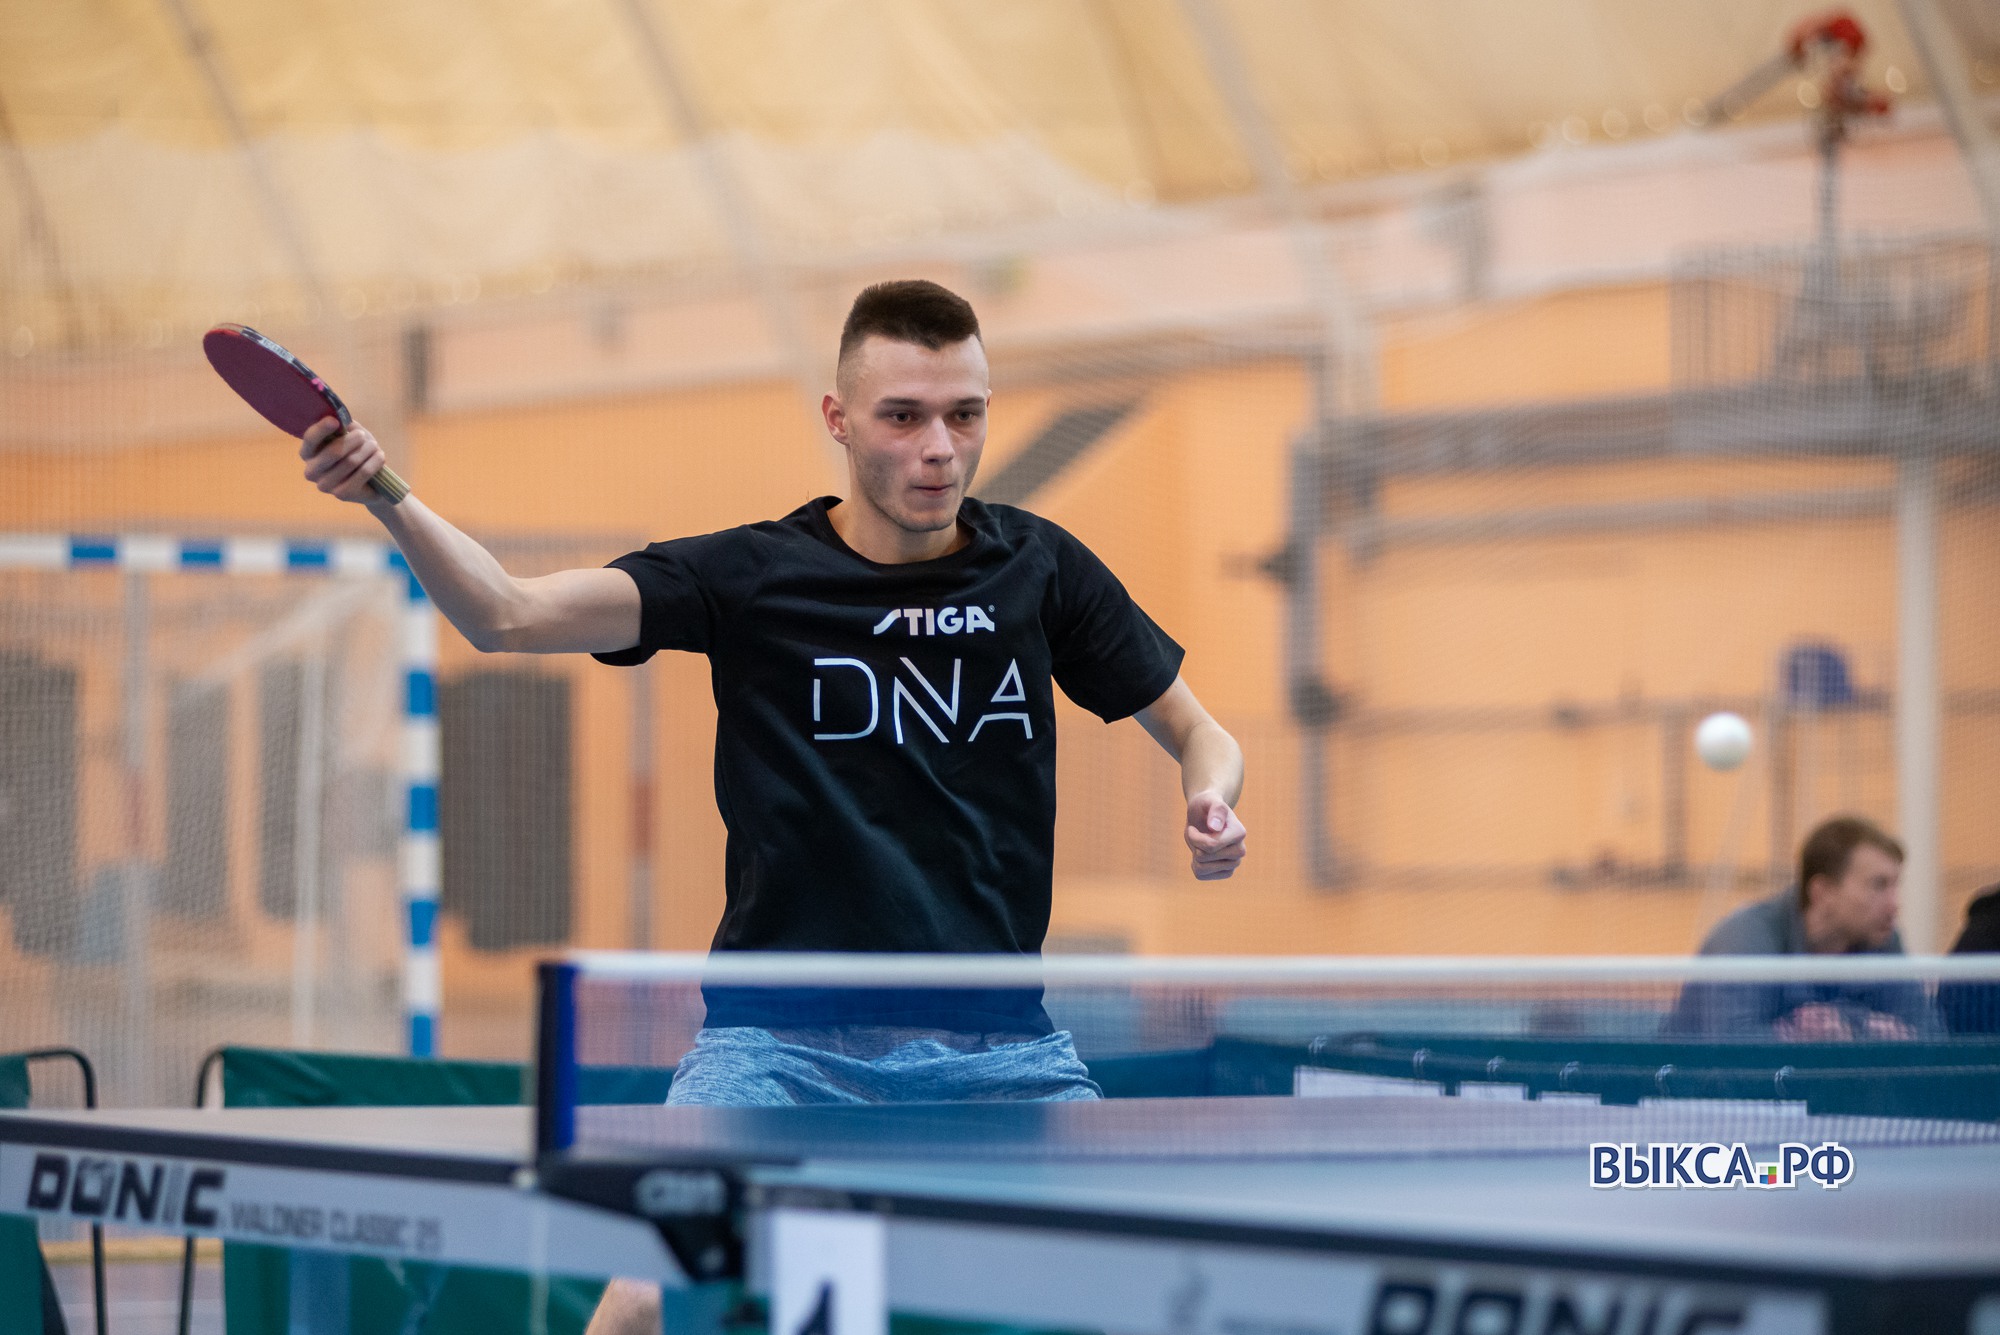 Теннисисту Дмитрию Давыдову присвоили звание кандидата в мастера спорта